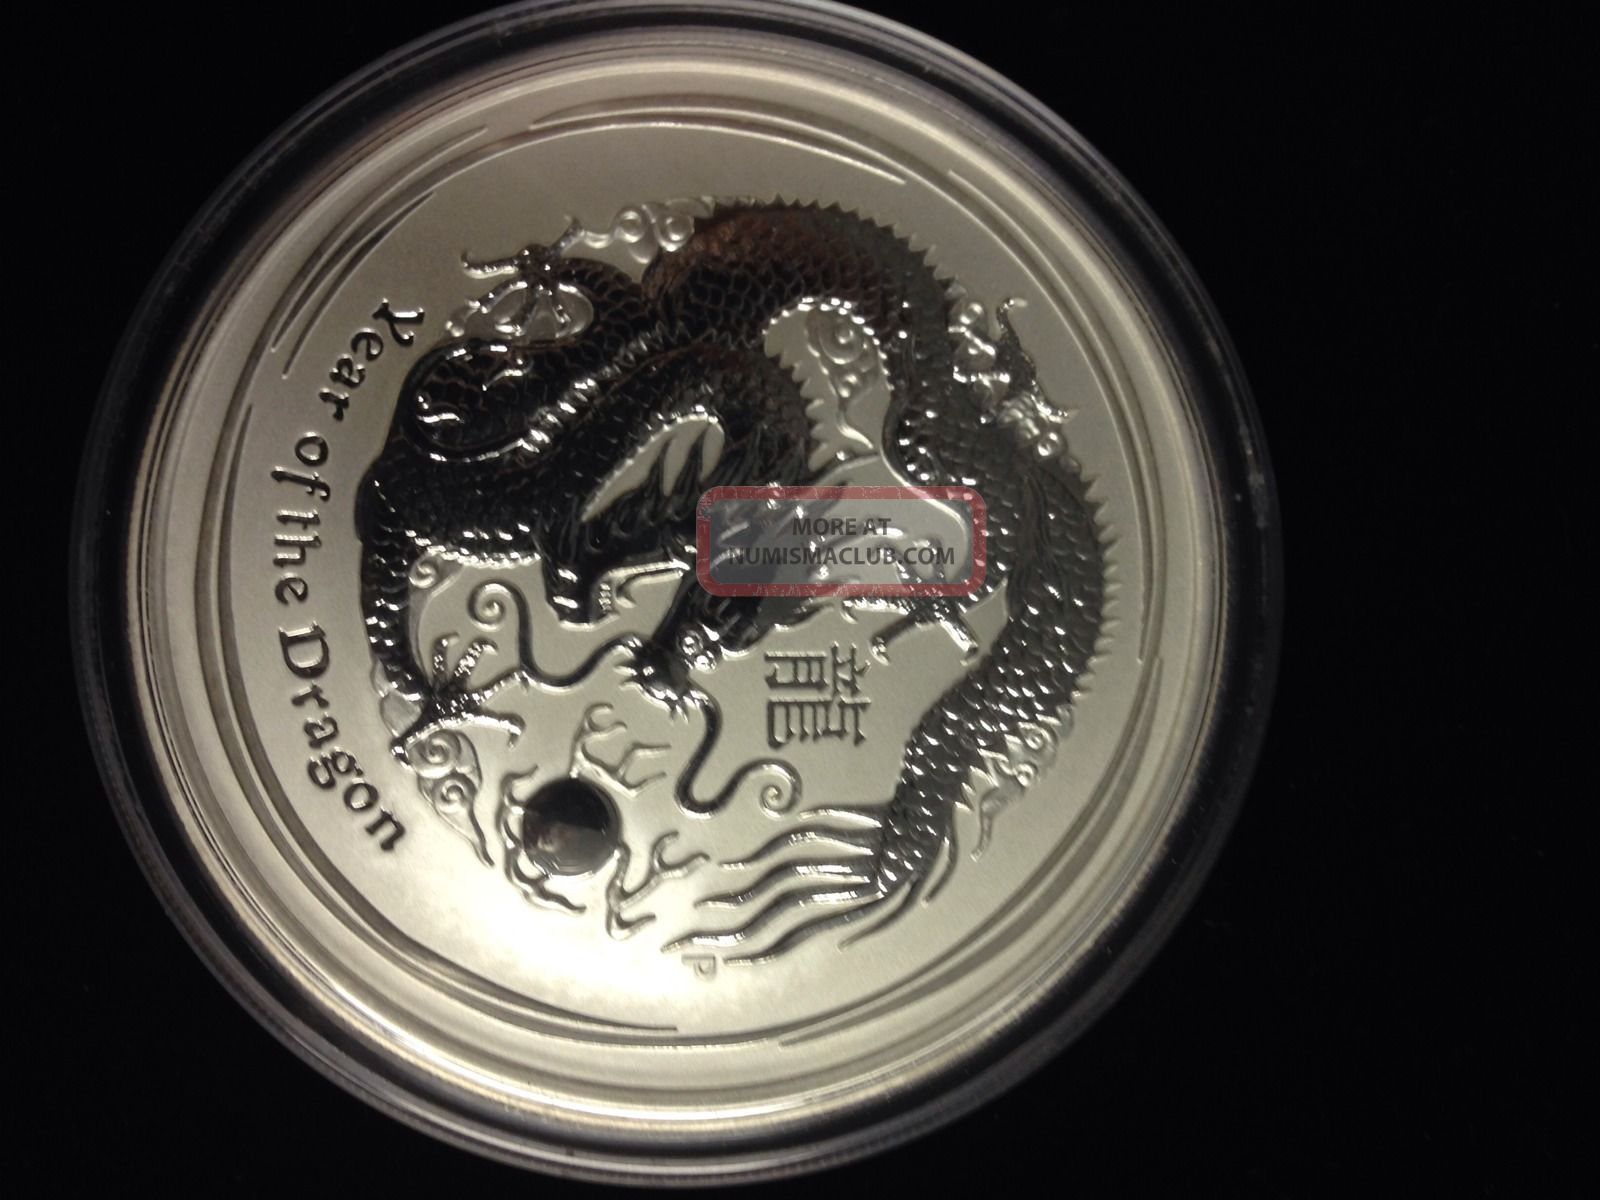 5 oz silver lunar coins